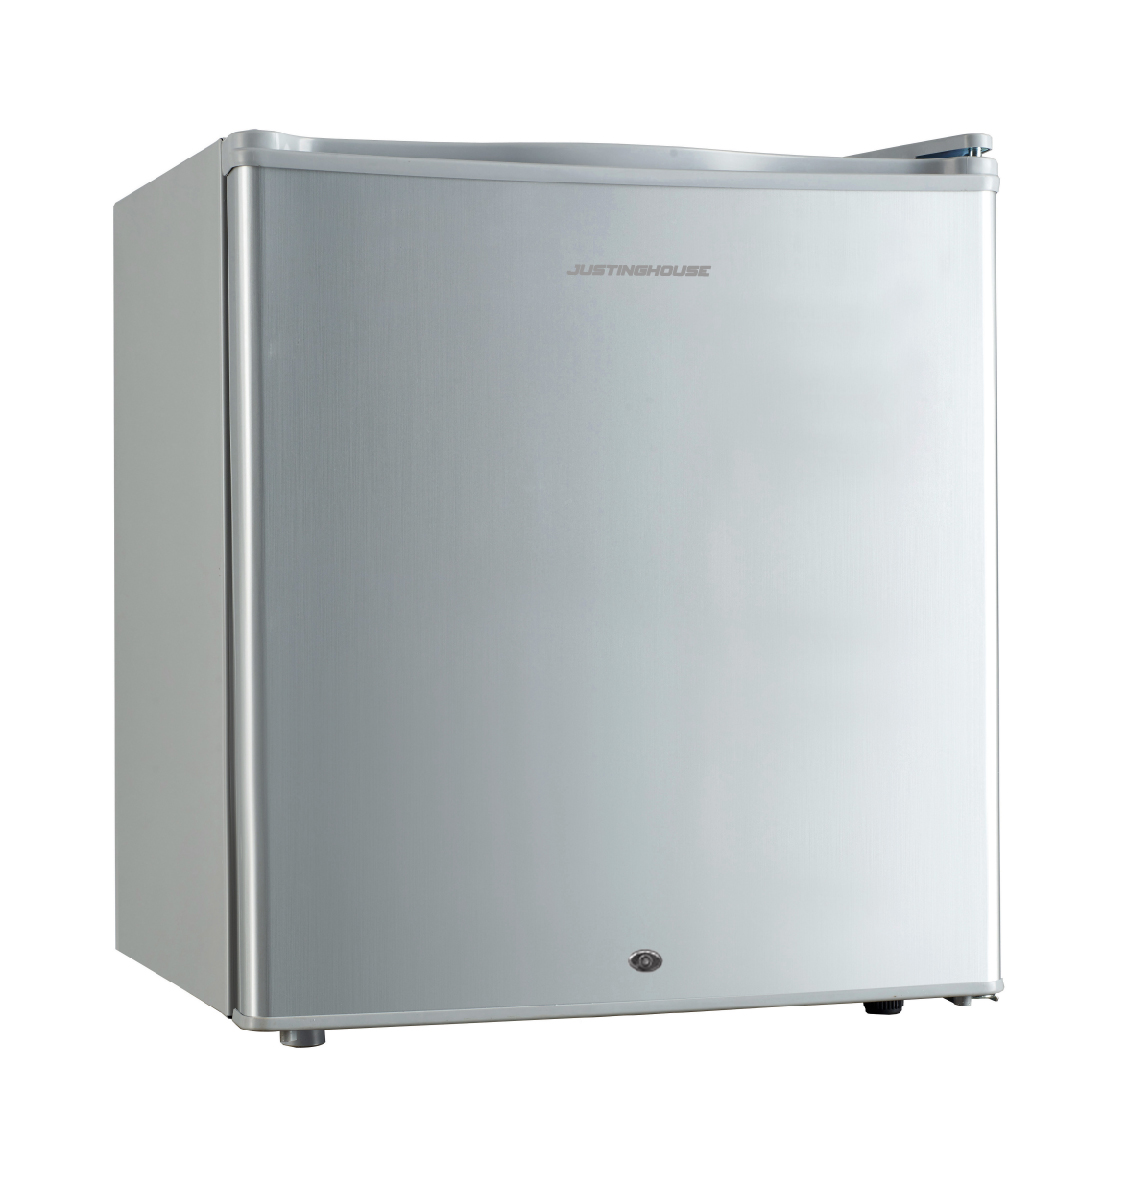 Justinghouse Single Door Refrigerator, 1.7 Feet, 48 L, Silver, Jsrf-49D